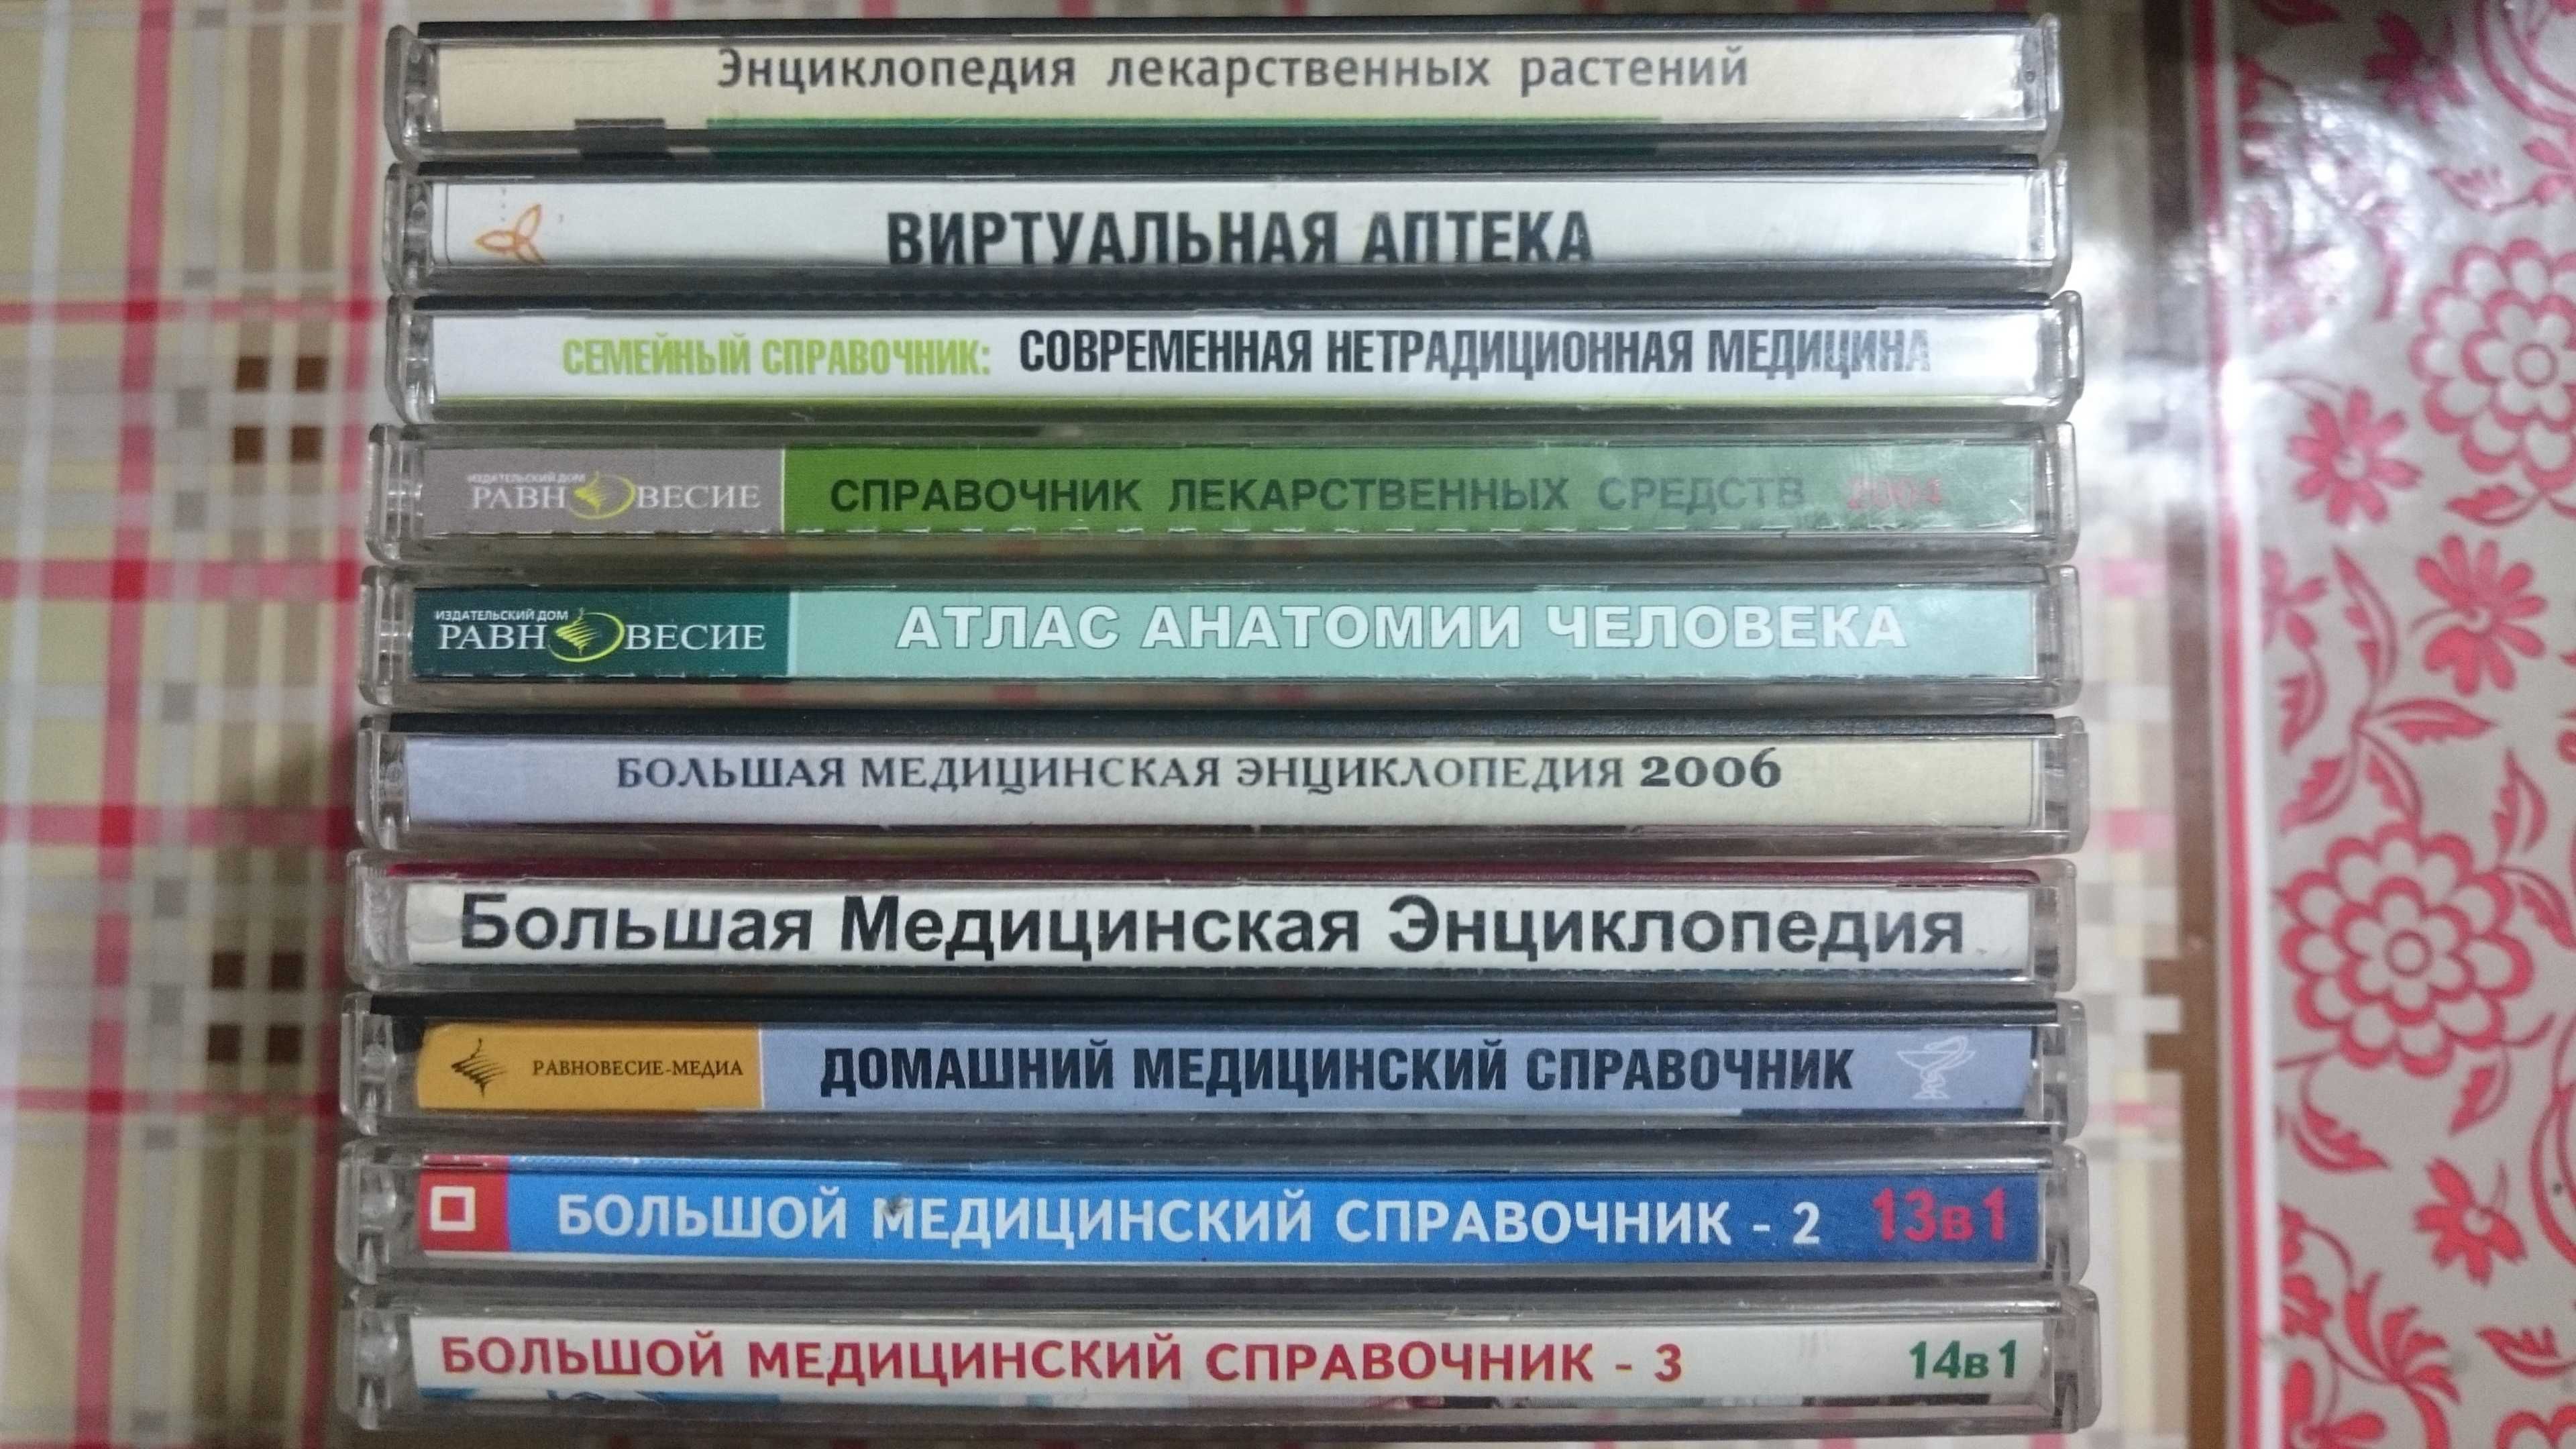 Медицинские справочники на 10 компакт дисках